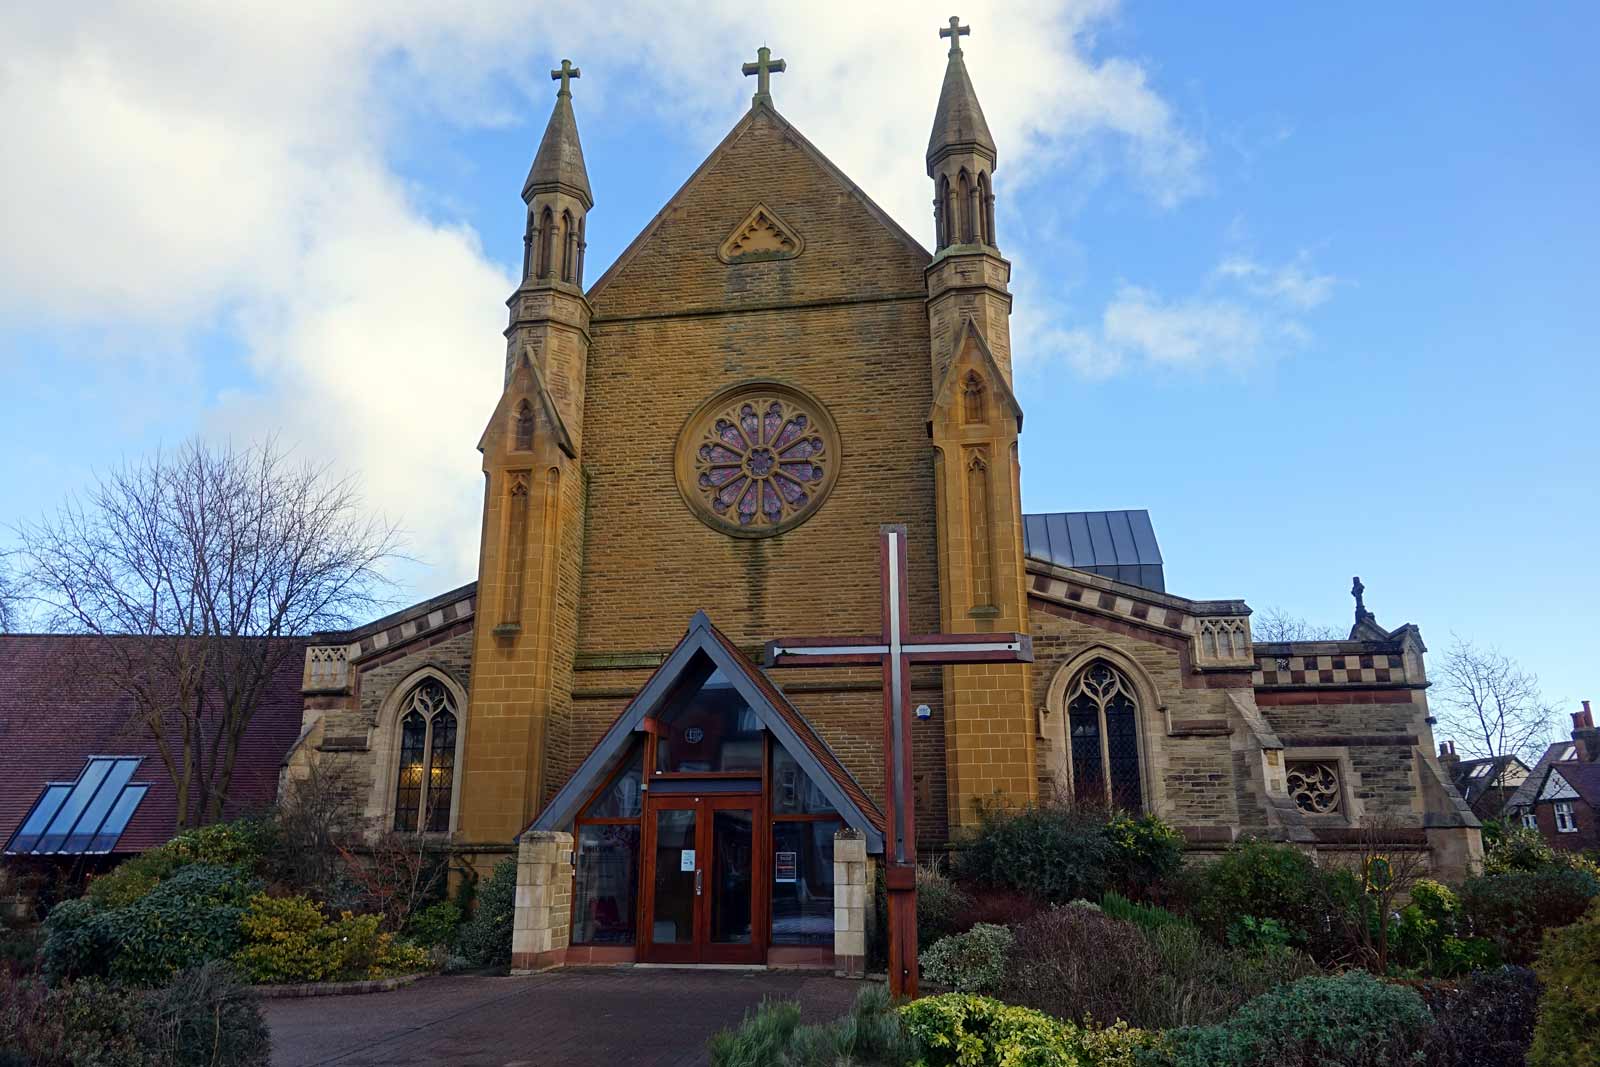 St Mark’s Church, Leeds Road in Harrogate.